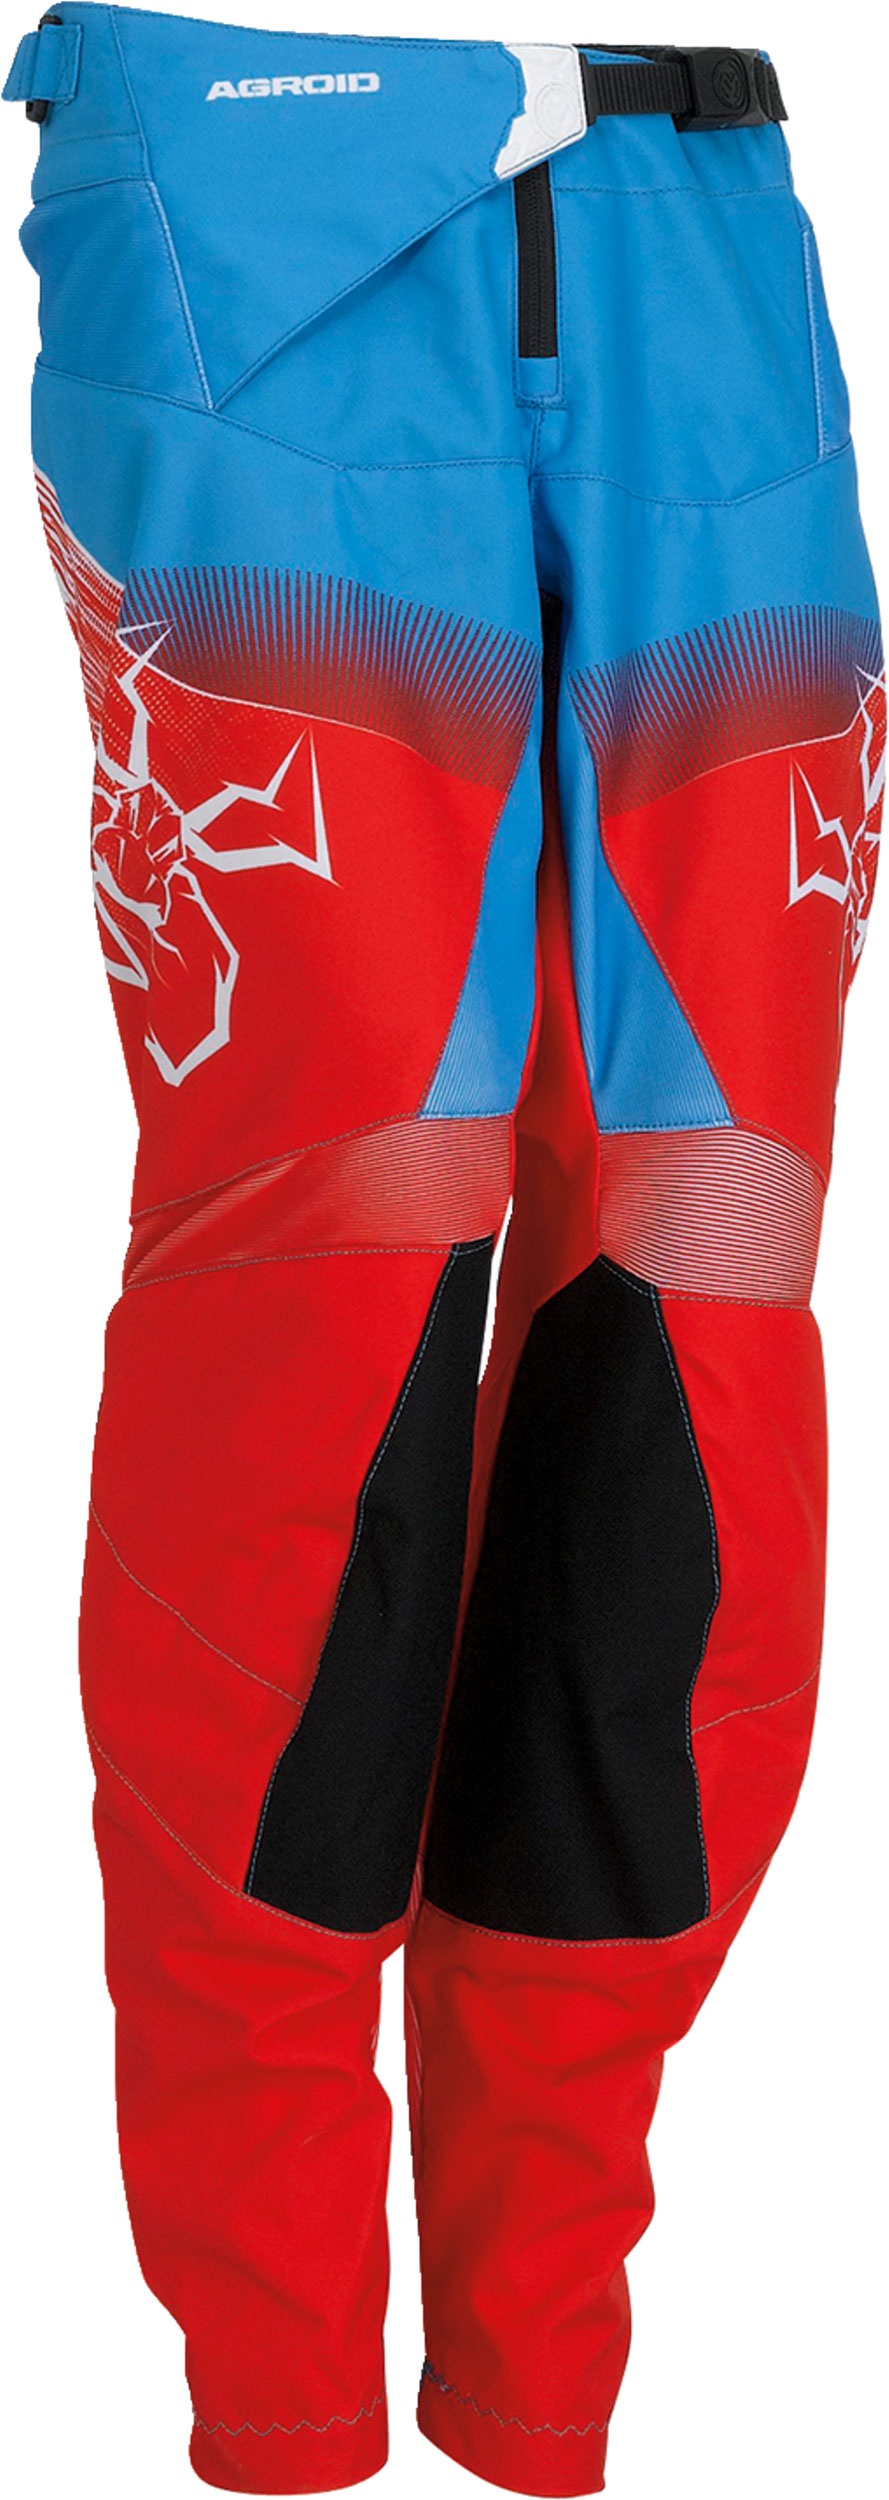 Moose Racing Agroid S22, pantalon textile pour jeunes - Rouge/Blanc/Bleu - 18